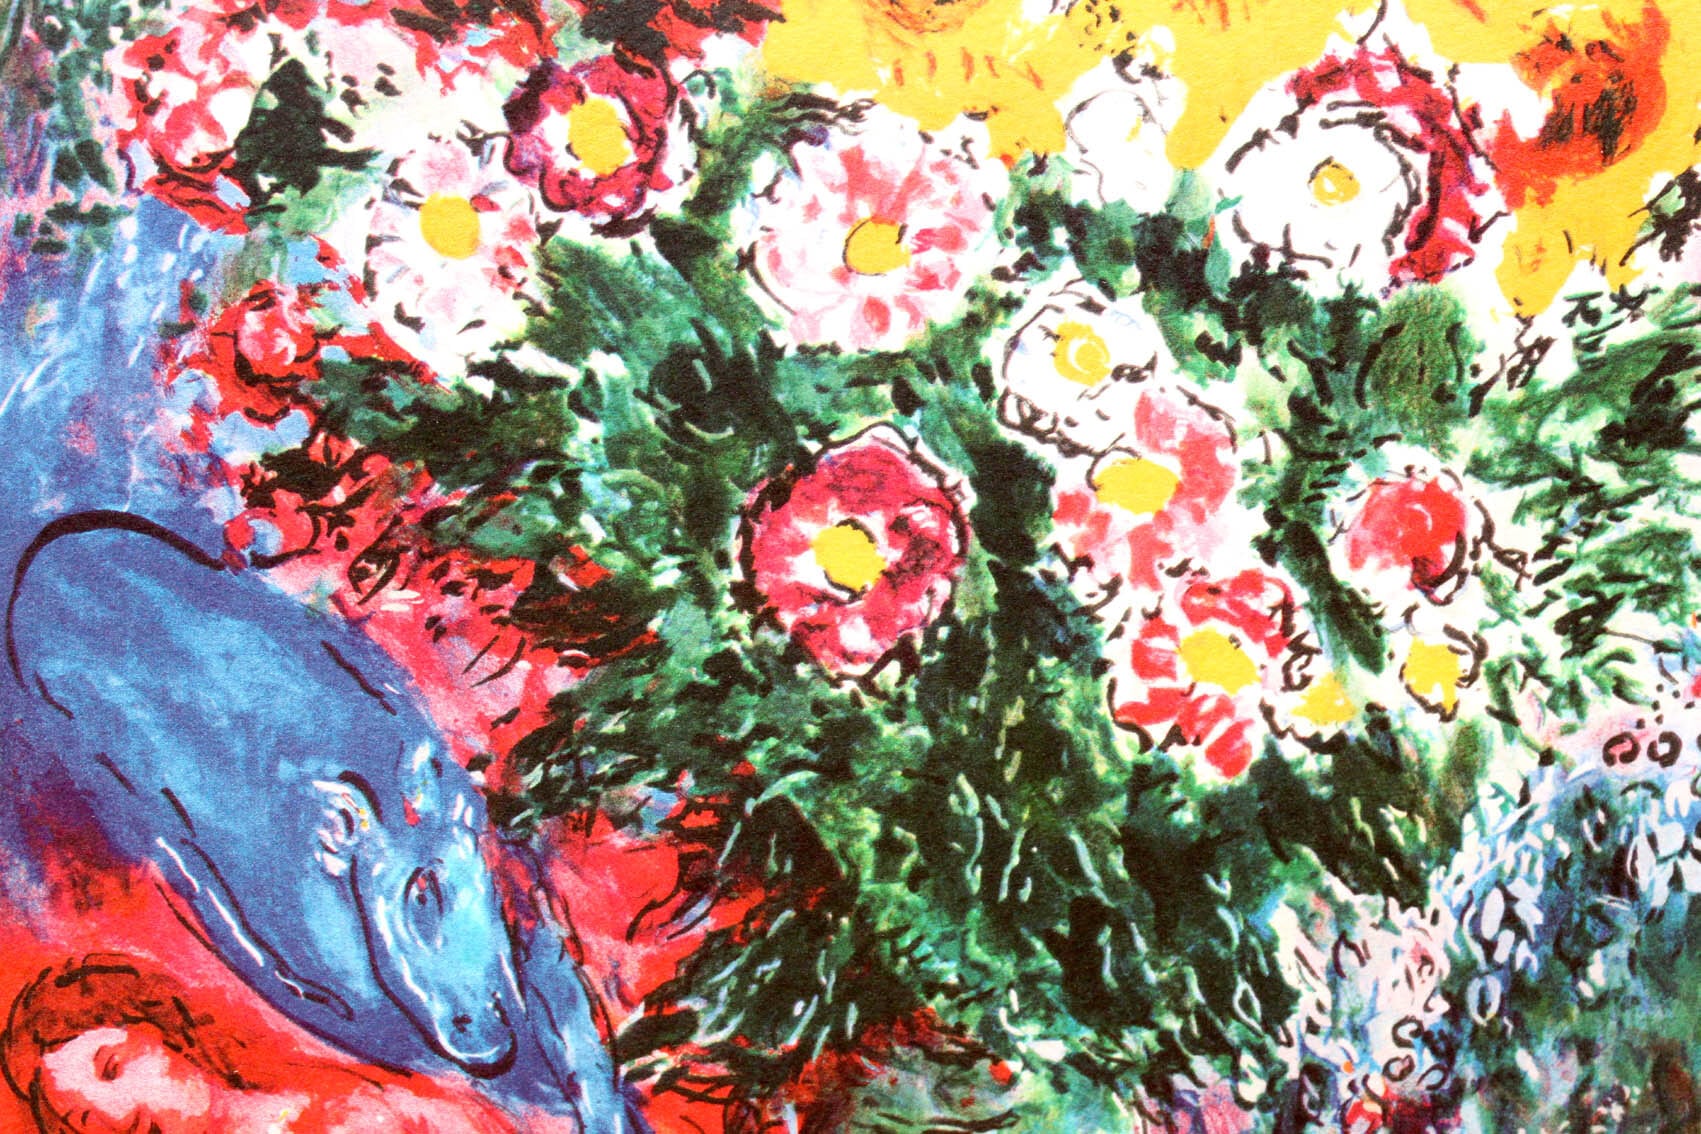 マルク・シャガール絵画「憂い」作品証明書・展示用フック・限定375部エディション付複製画ジークレ